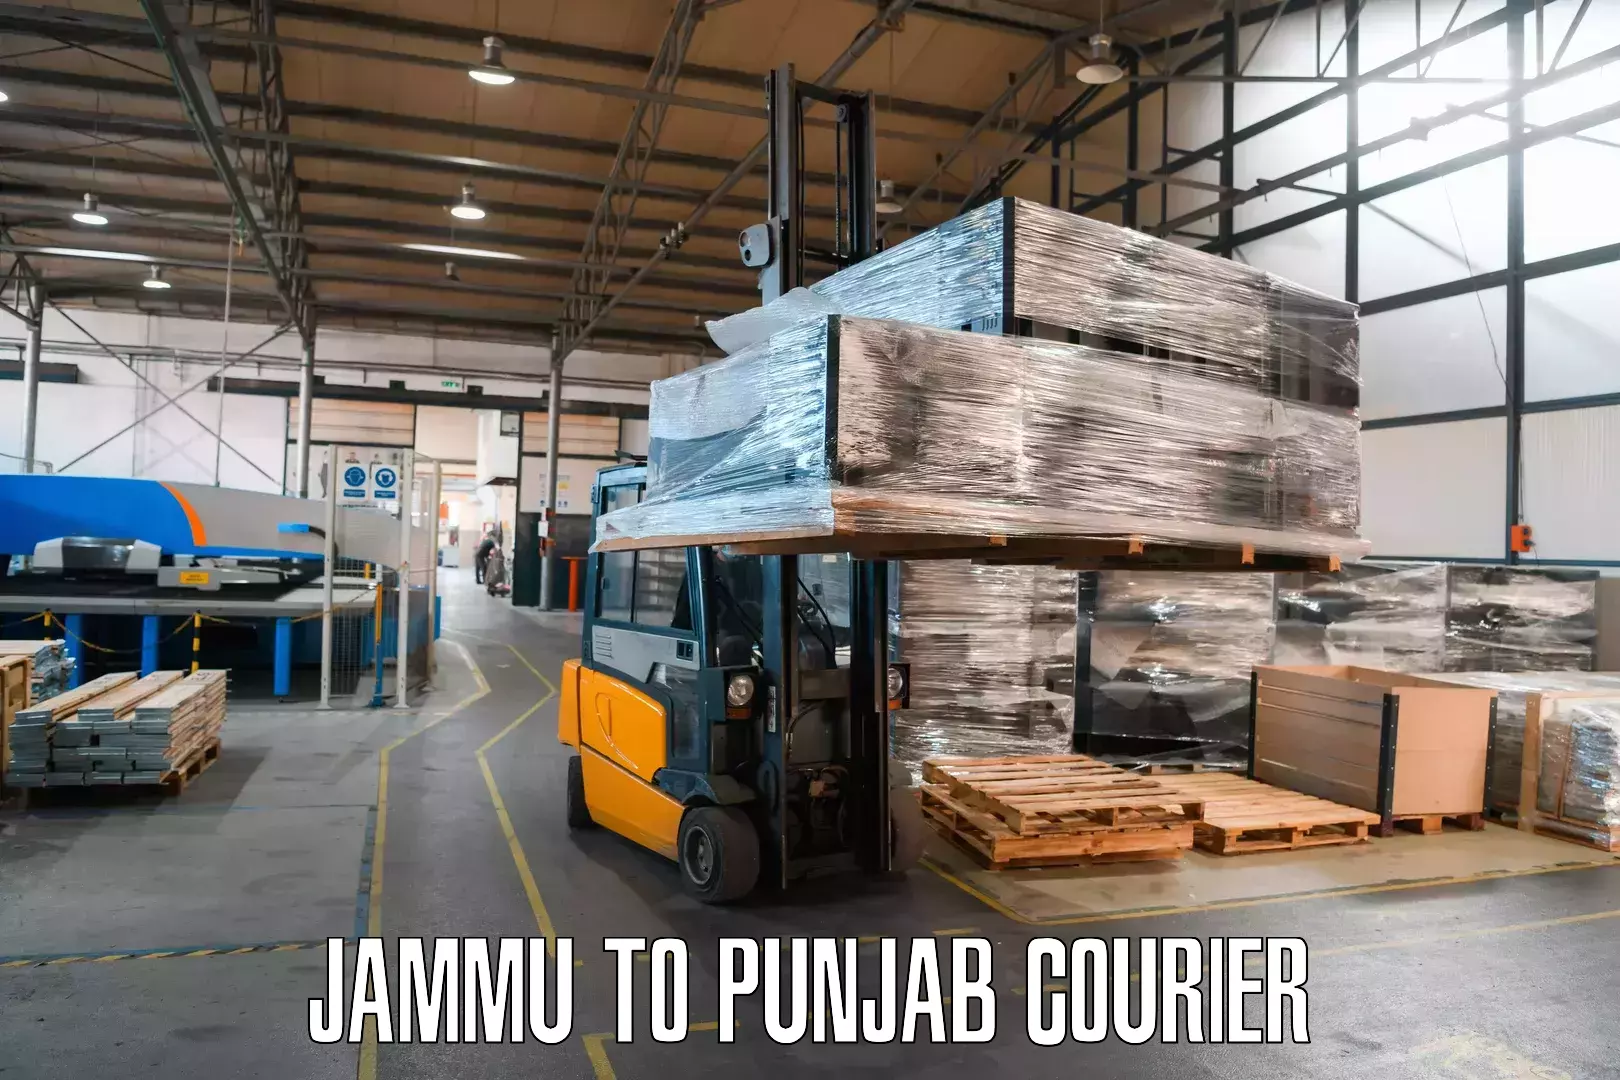 Global freight services Jammu to Punjab